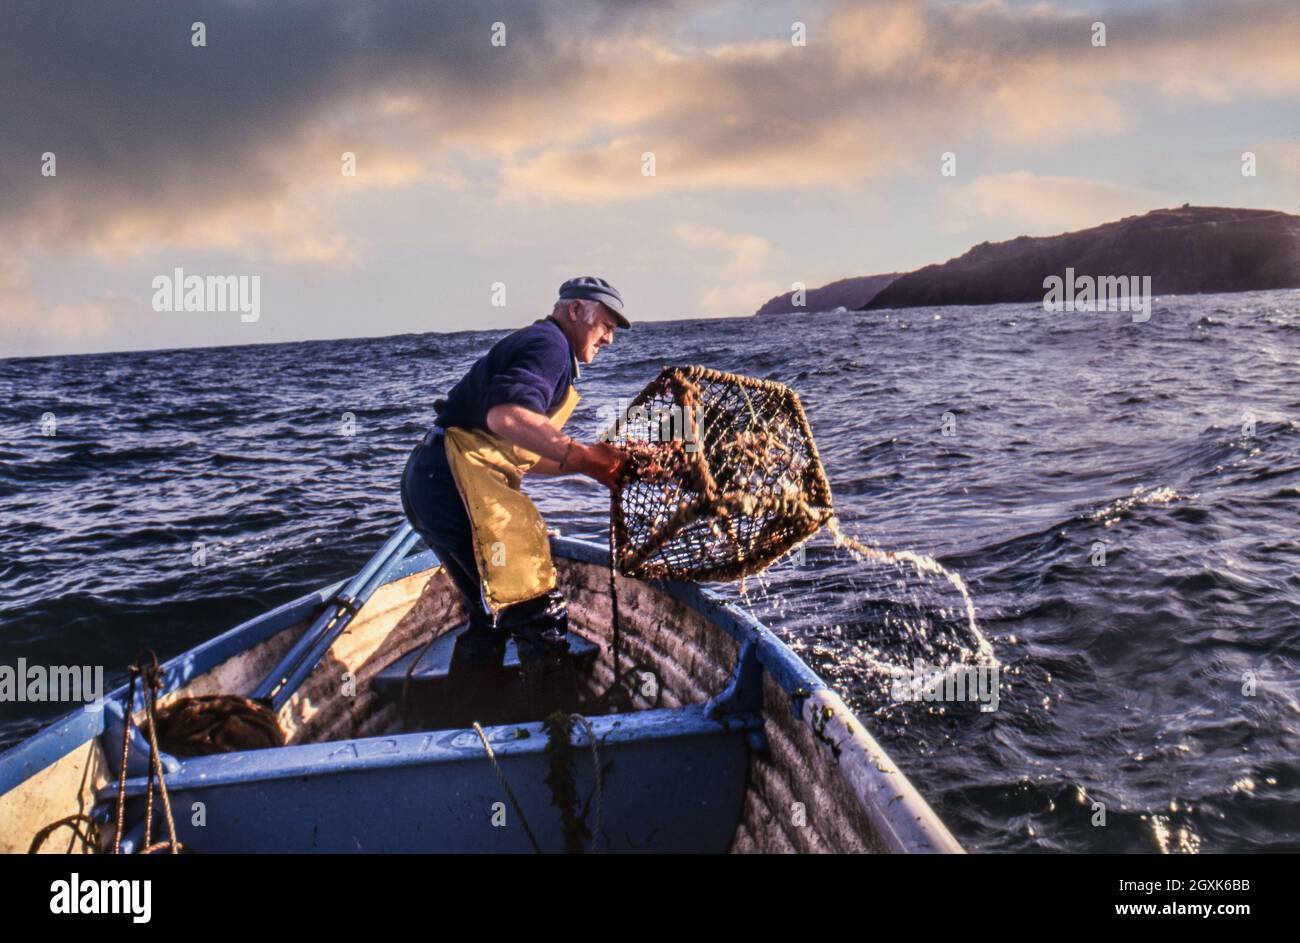 Hummer/Krabben Britischer Fischer auf See in einem kleinen offenen Boot, das seine Hummertöpfe bei Sonnenaufgang vor der Cornwall-Küste in Großbritannien herausnimmt Stockfoto